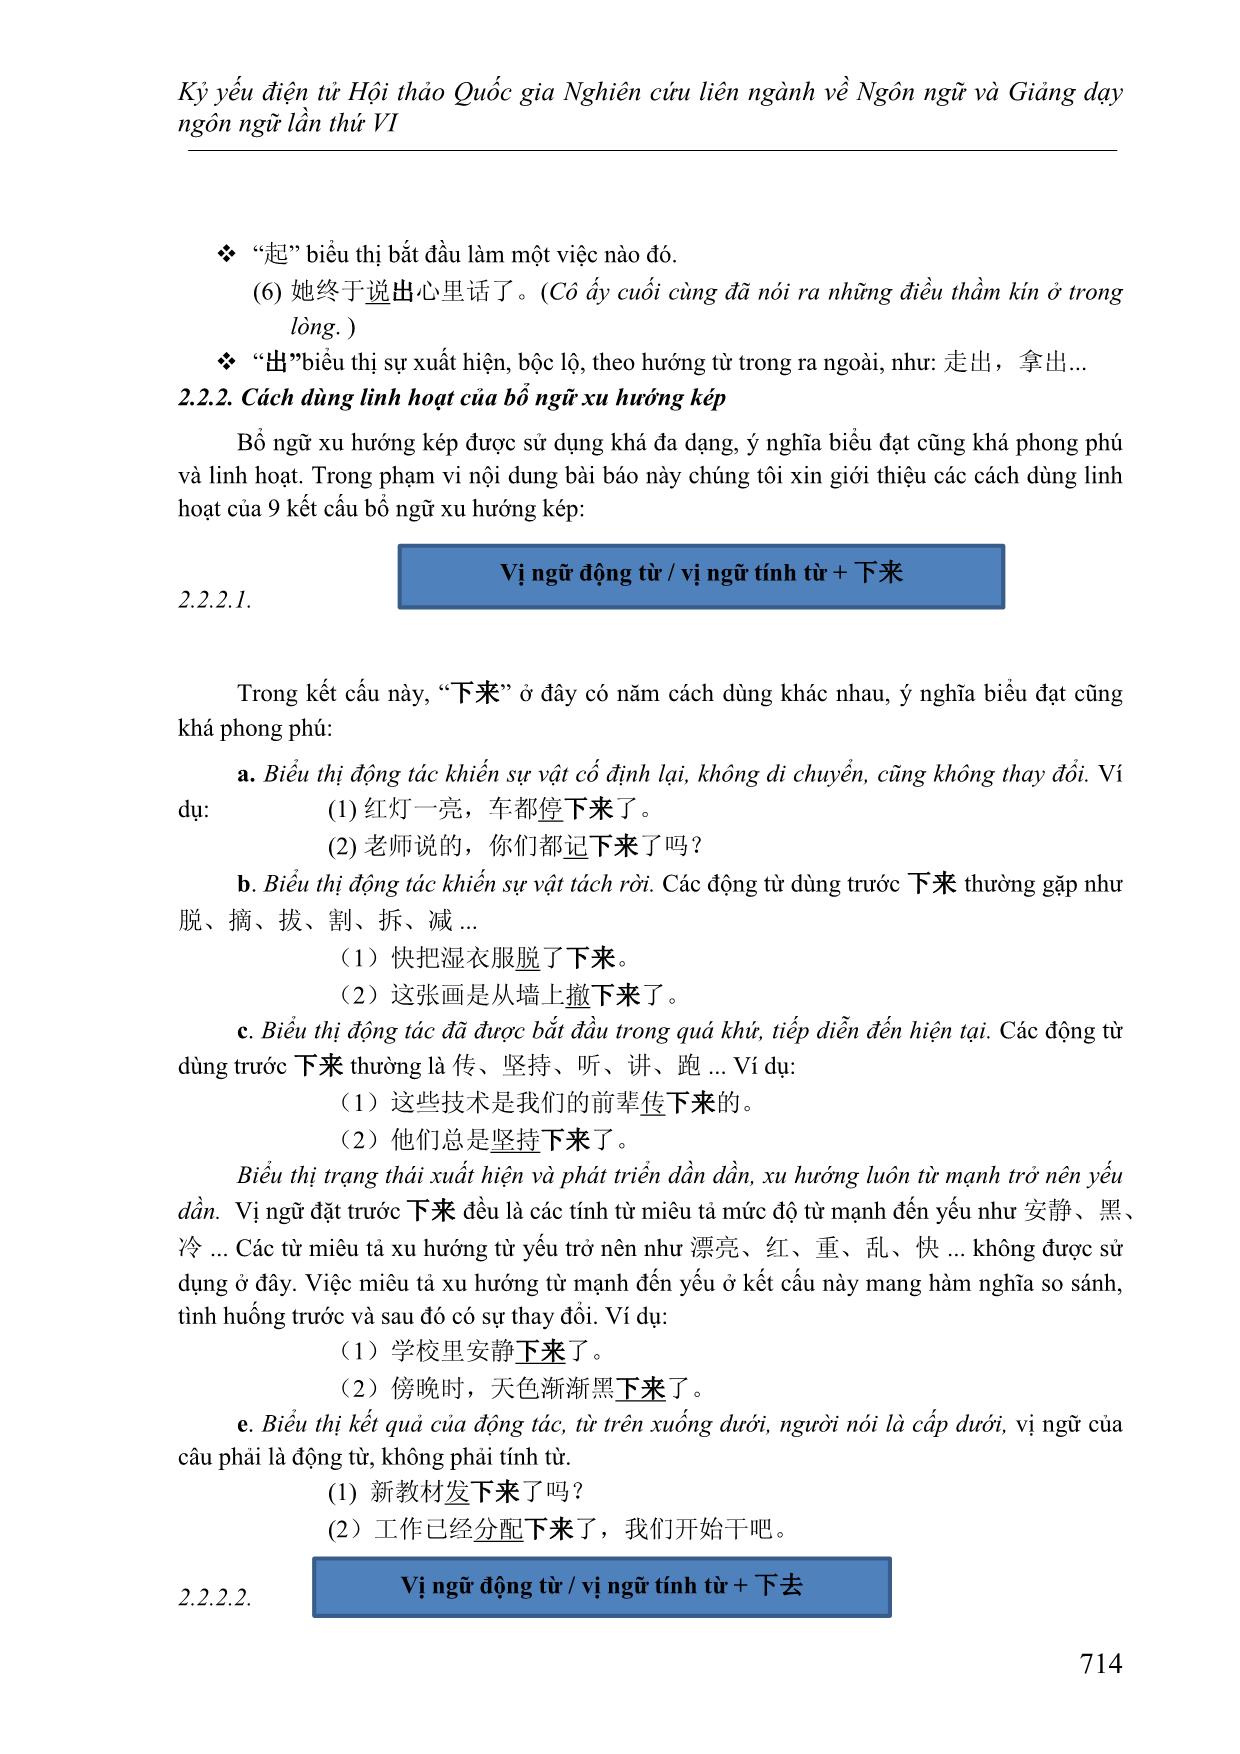 Cách dùng linh hoạt của bổ ngữ xu hướng và cách xác định ý nghĩa của câu khi sử dụng bổ ngữ xu hướng kép 上来, 上去, 下来,下 trang 4